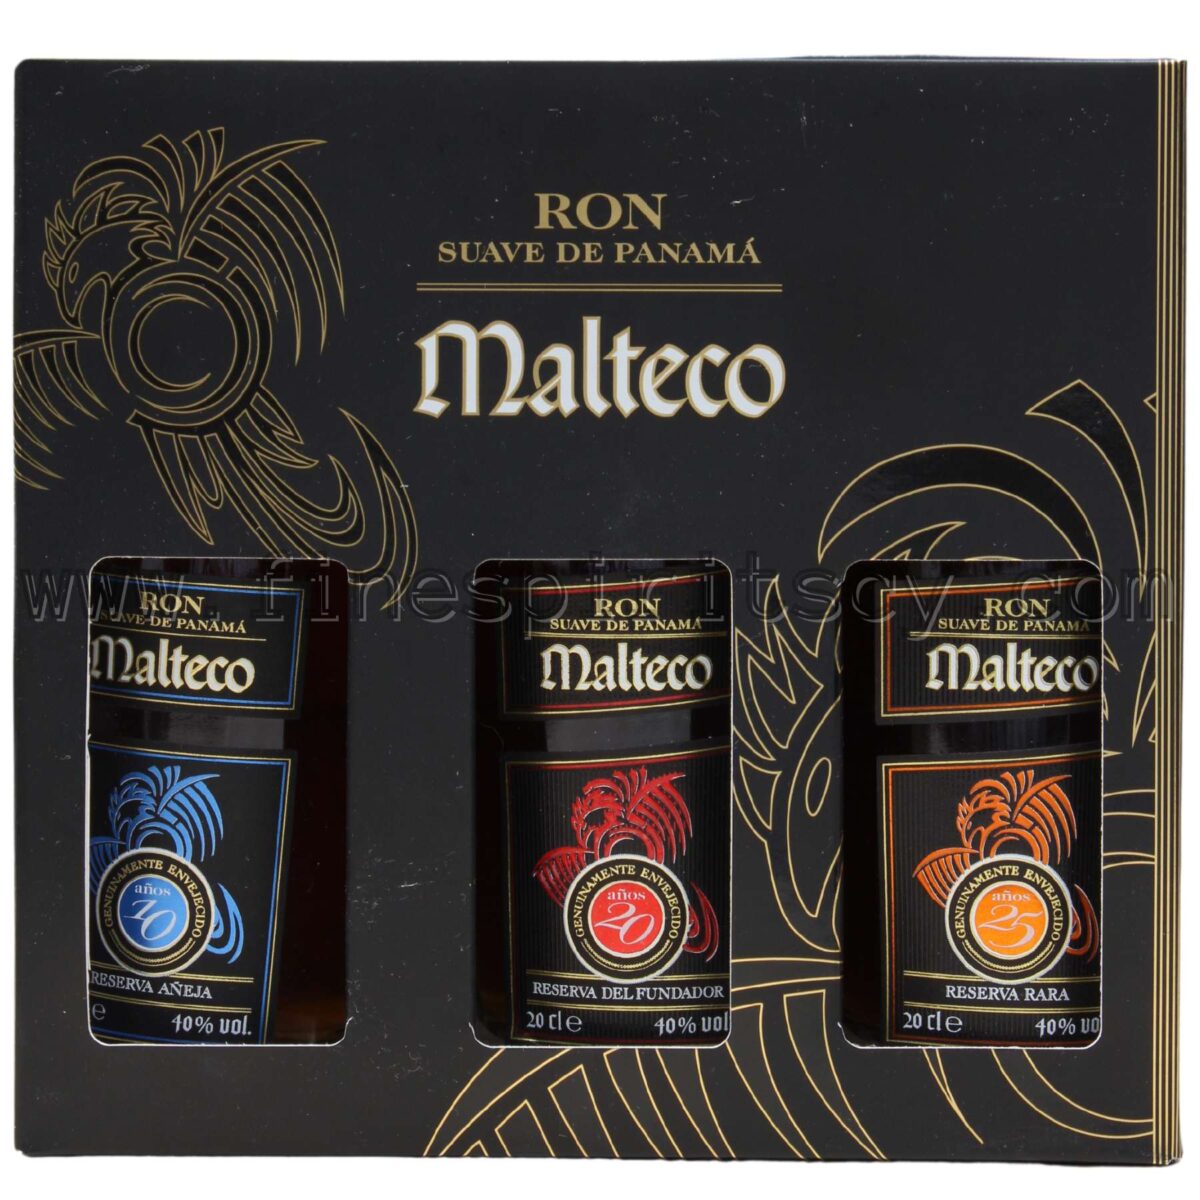 Ron Malteco Tasting Set Collection 10YO 15YO 25YO Cyprus Price Online Order